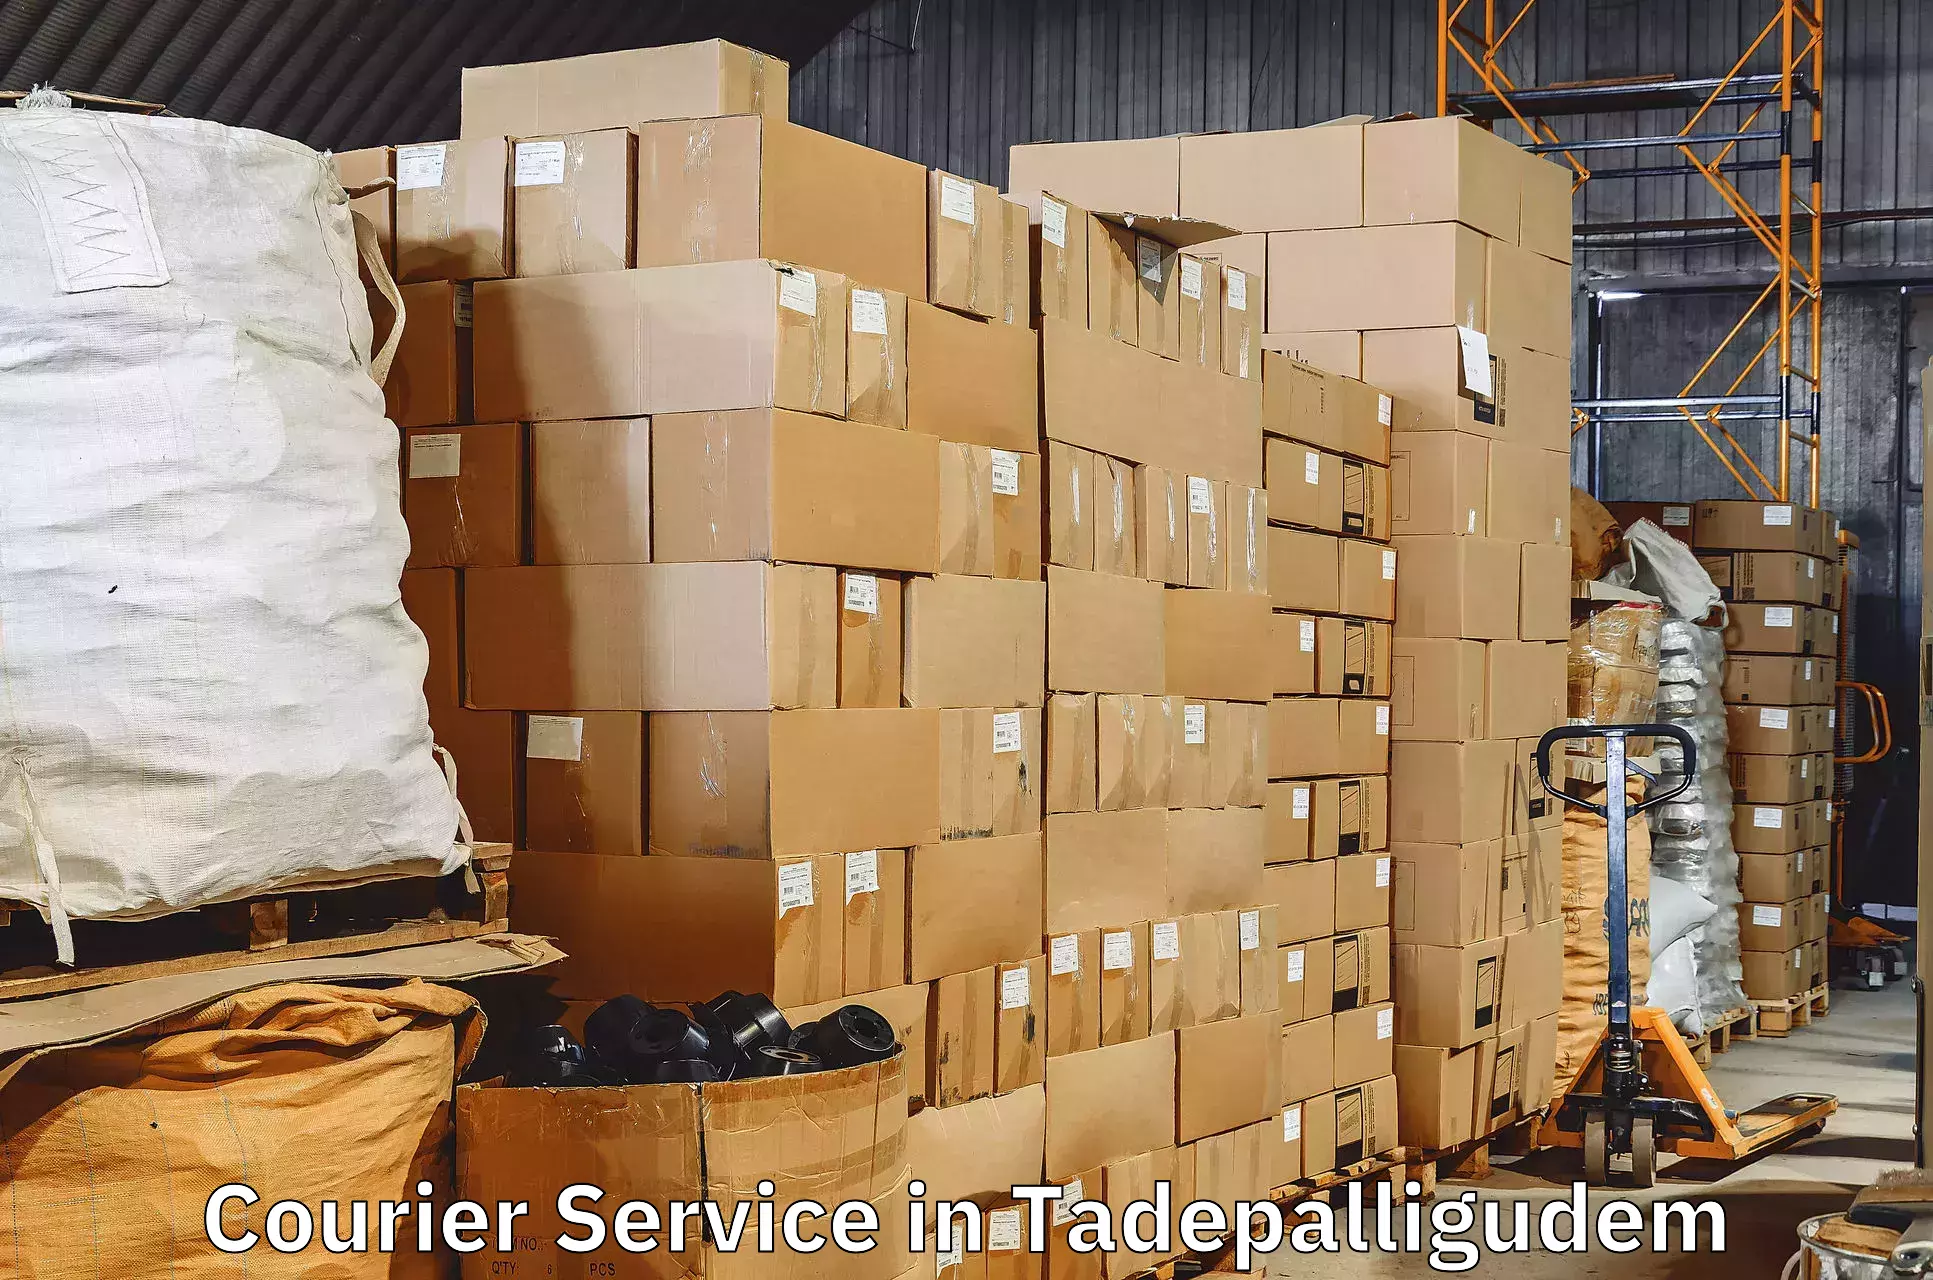 Supply chain efficiency in Tadepalligudem